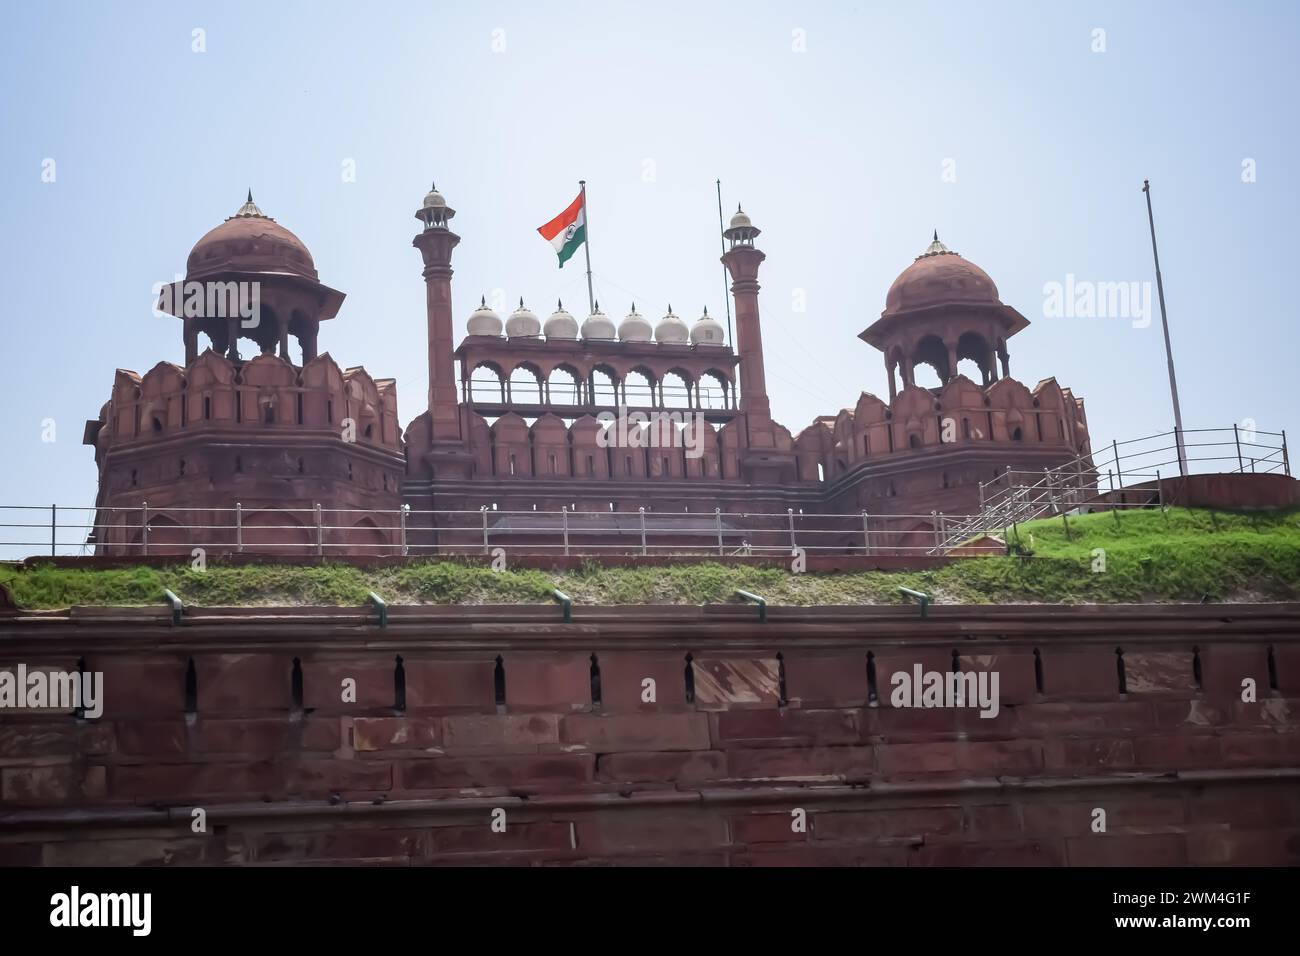 Architektonische Details von Lal Qila - Red Fort in Old Delhi, Indien, sehen Sie das Innere des Delhi Red Fort, die berühmten indischen Wahrzeichen Stockfoto